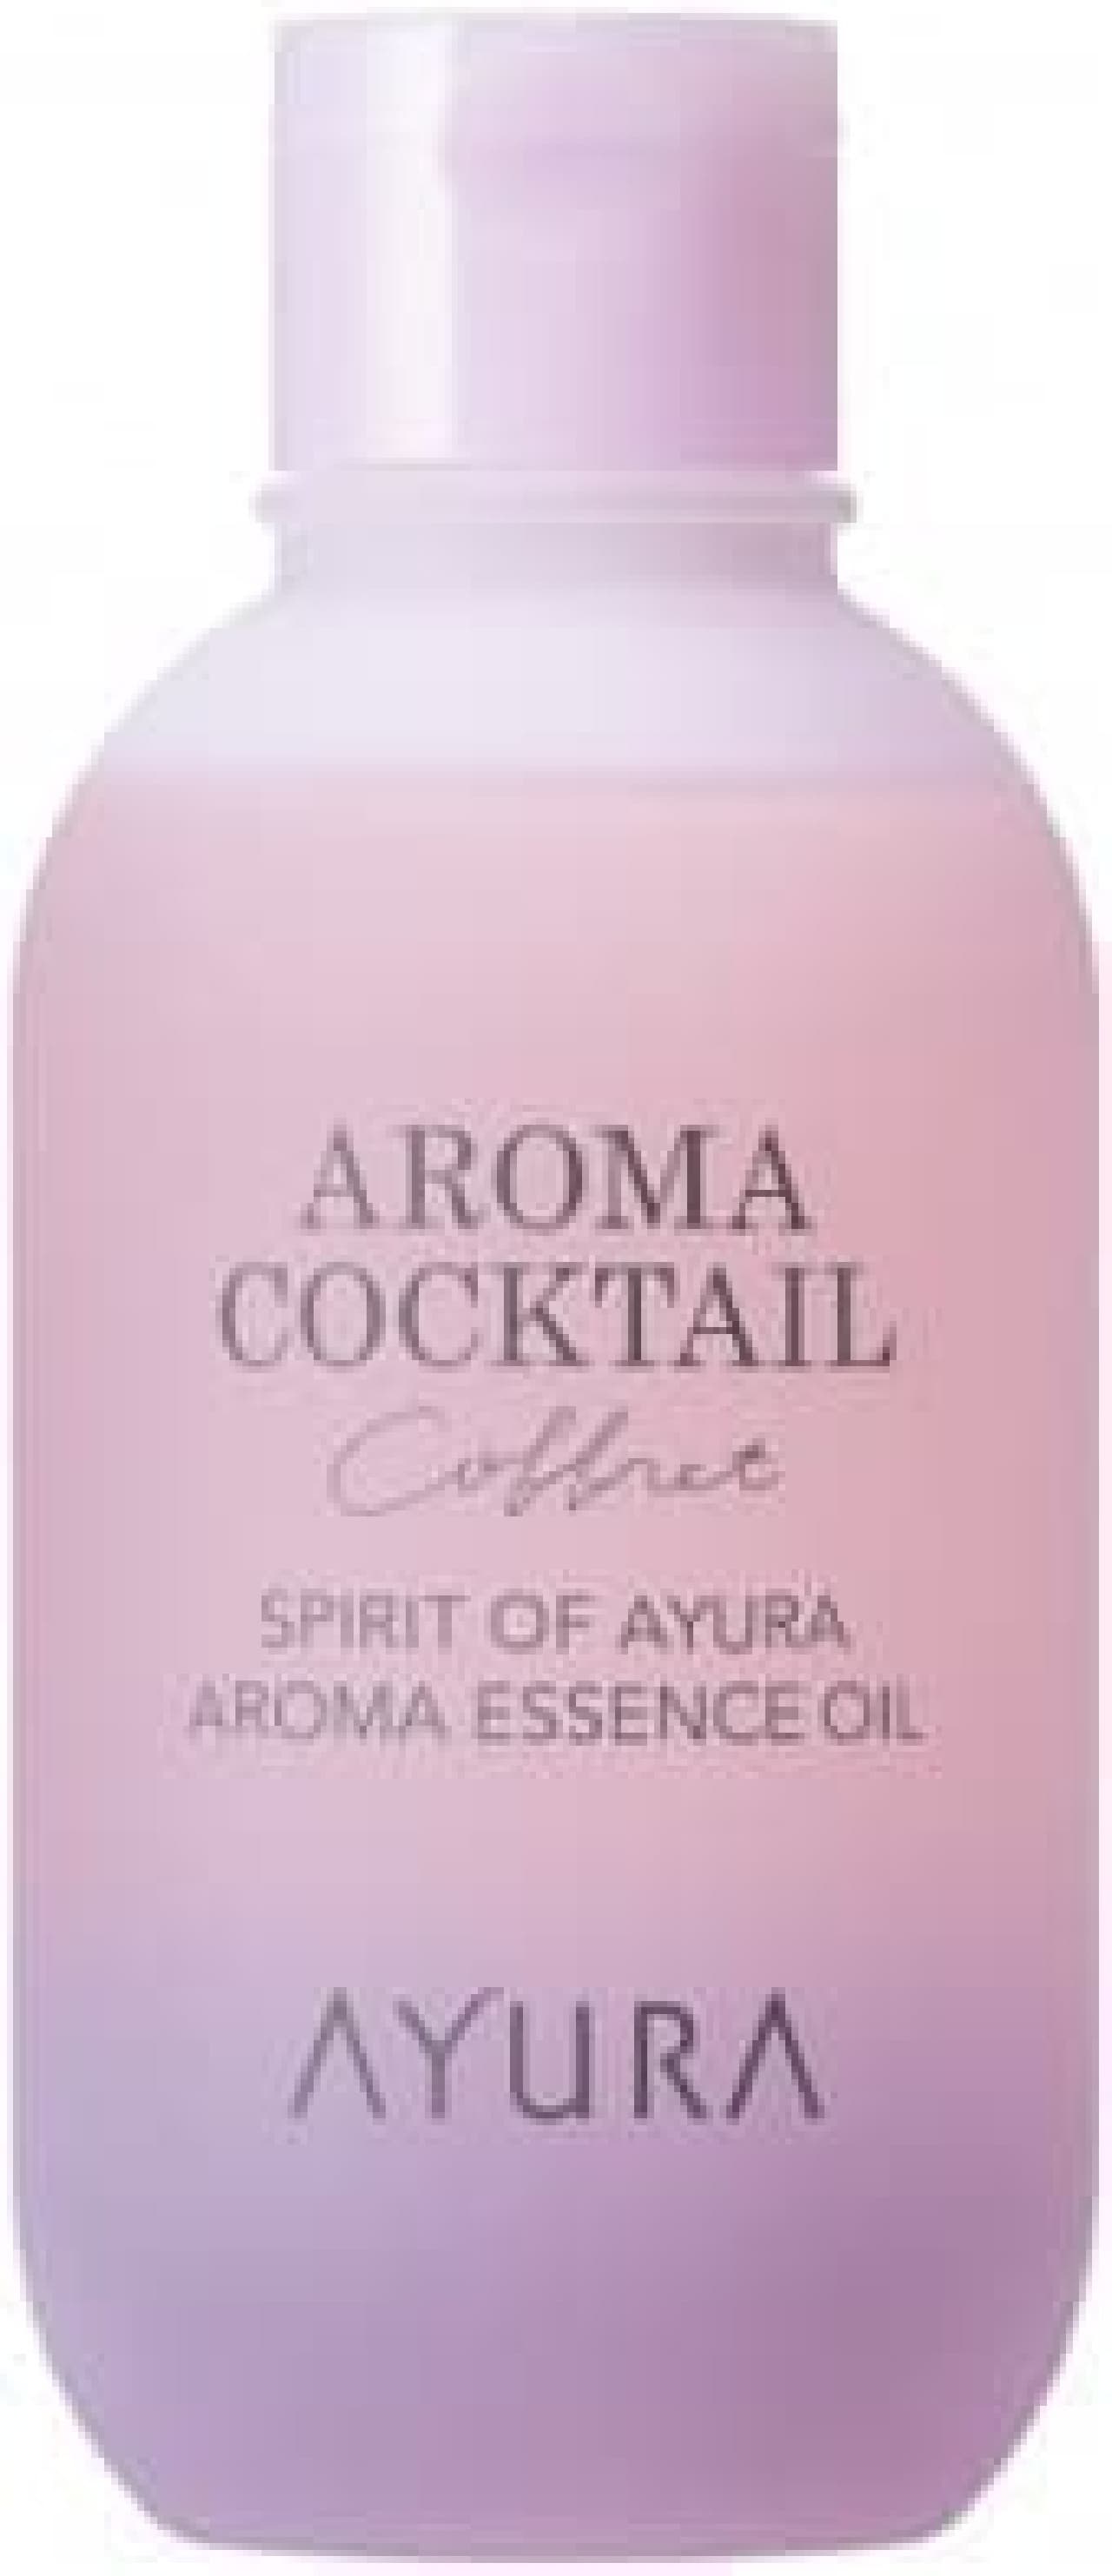 Spirit of Ayura Aroma Essence Oil